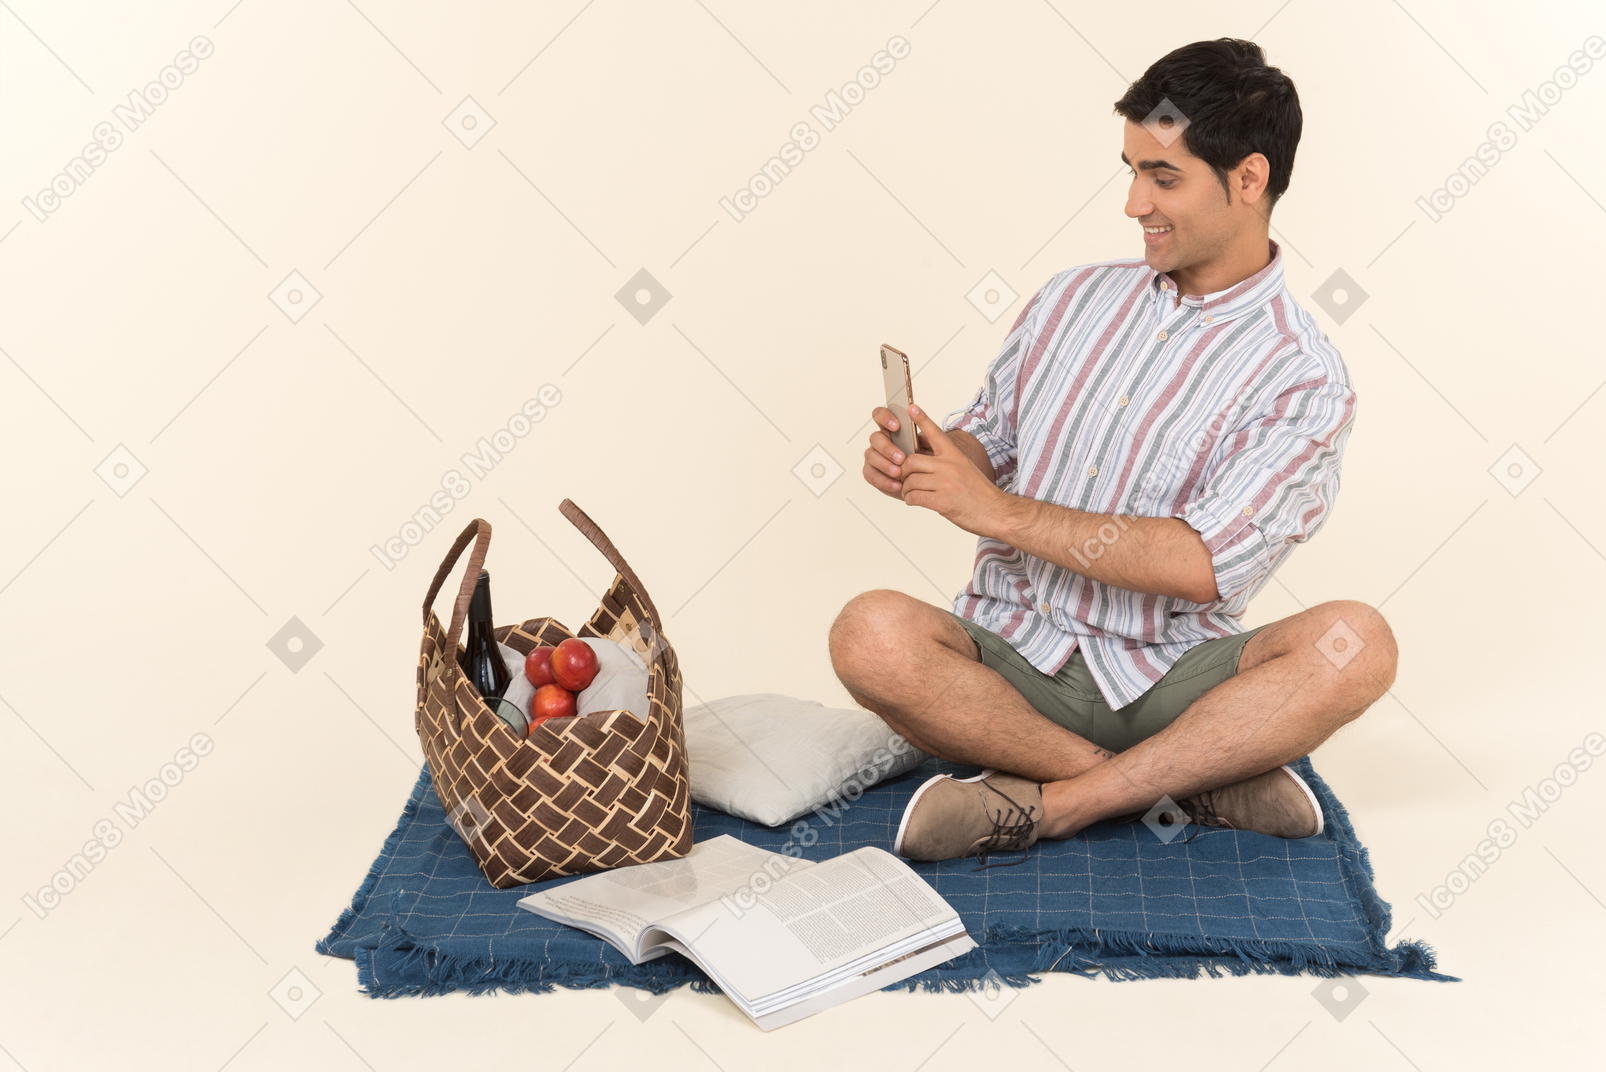 Jovem cara caucasiana sentado no cobertor e fazendo uma foto da cesta de piquenique